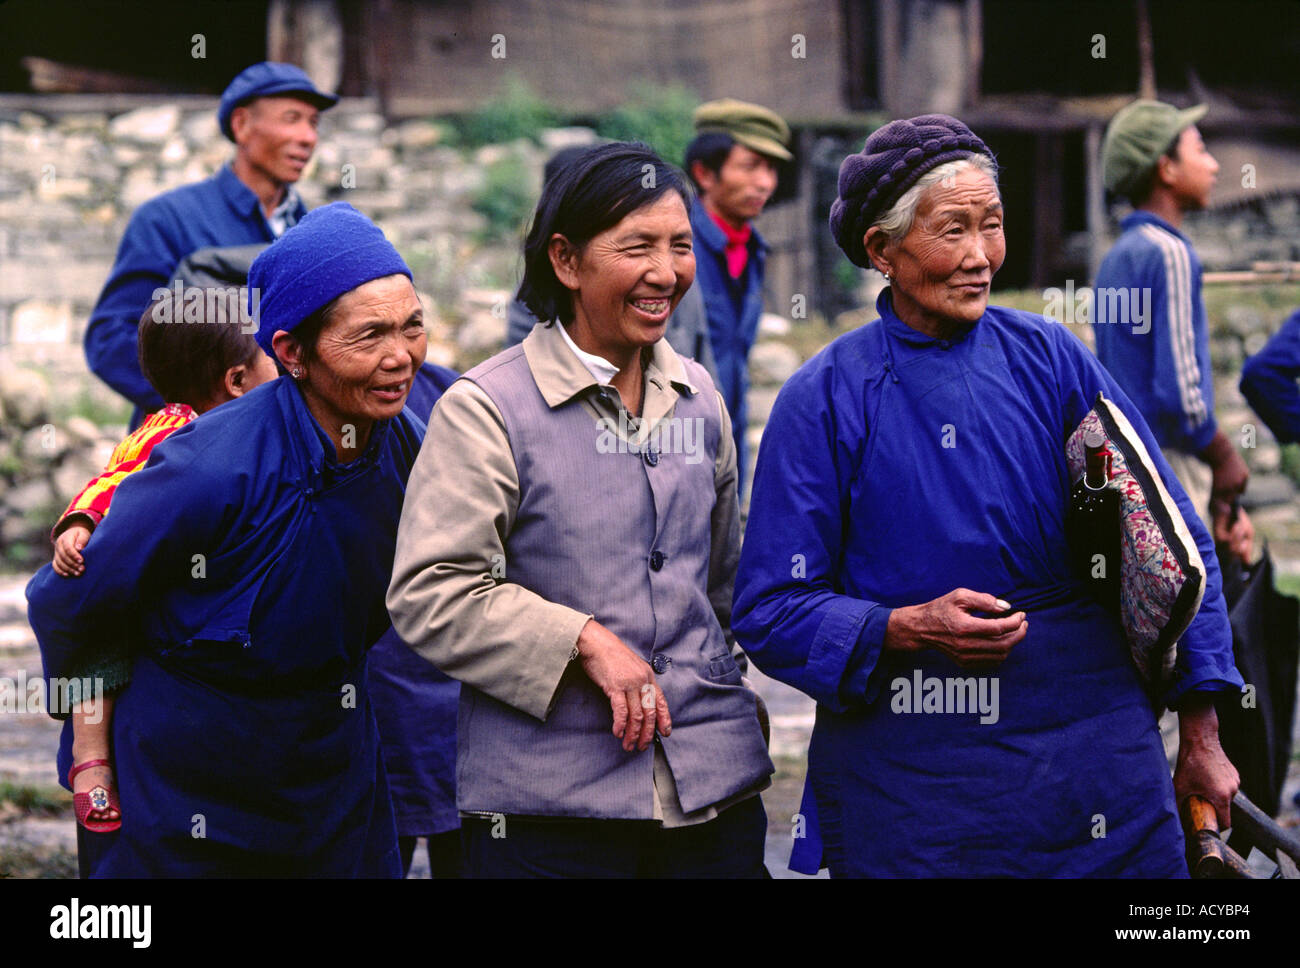 Les femmes de la minorité groupe ethnique BAI sourire et marcher ensemble dans la ville de l'agriculture chinois Chine YUNNAN DALI Banque D'Images